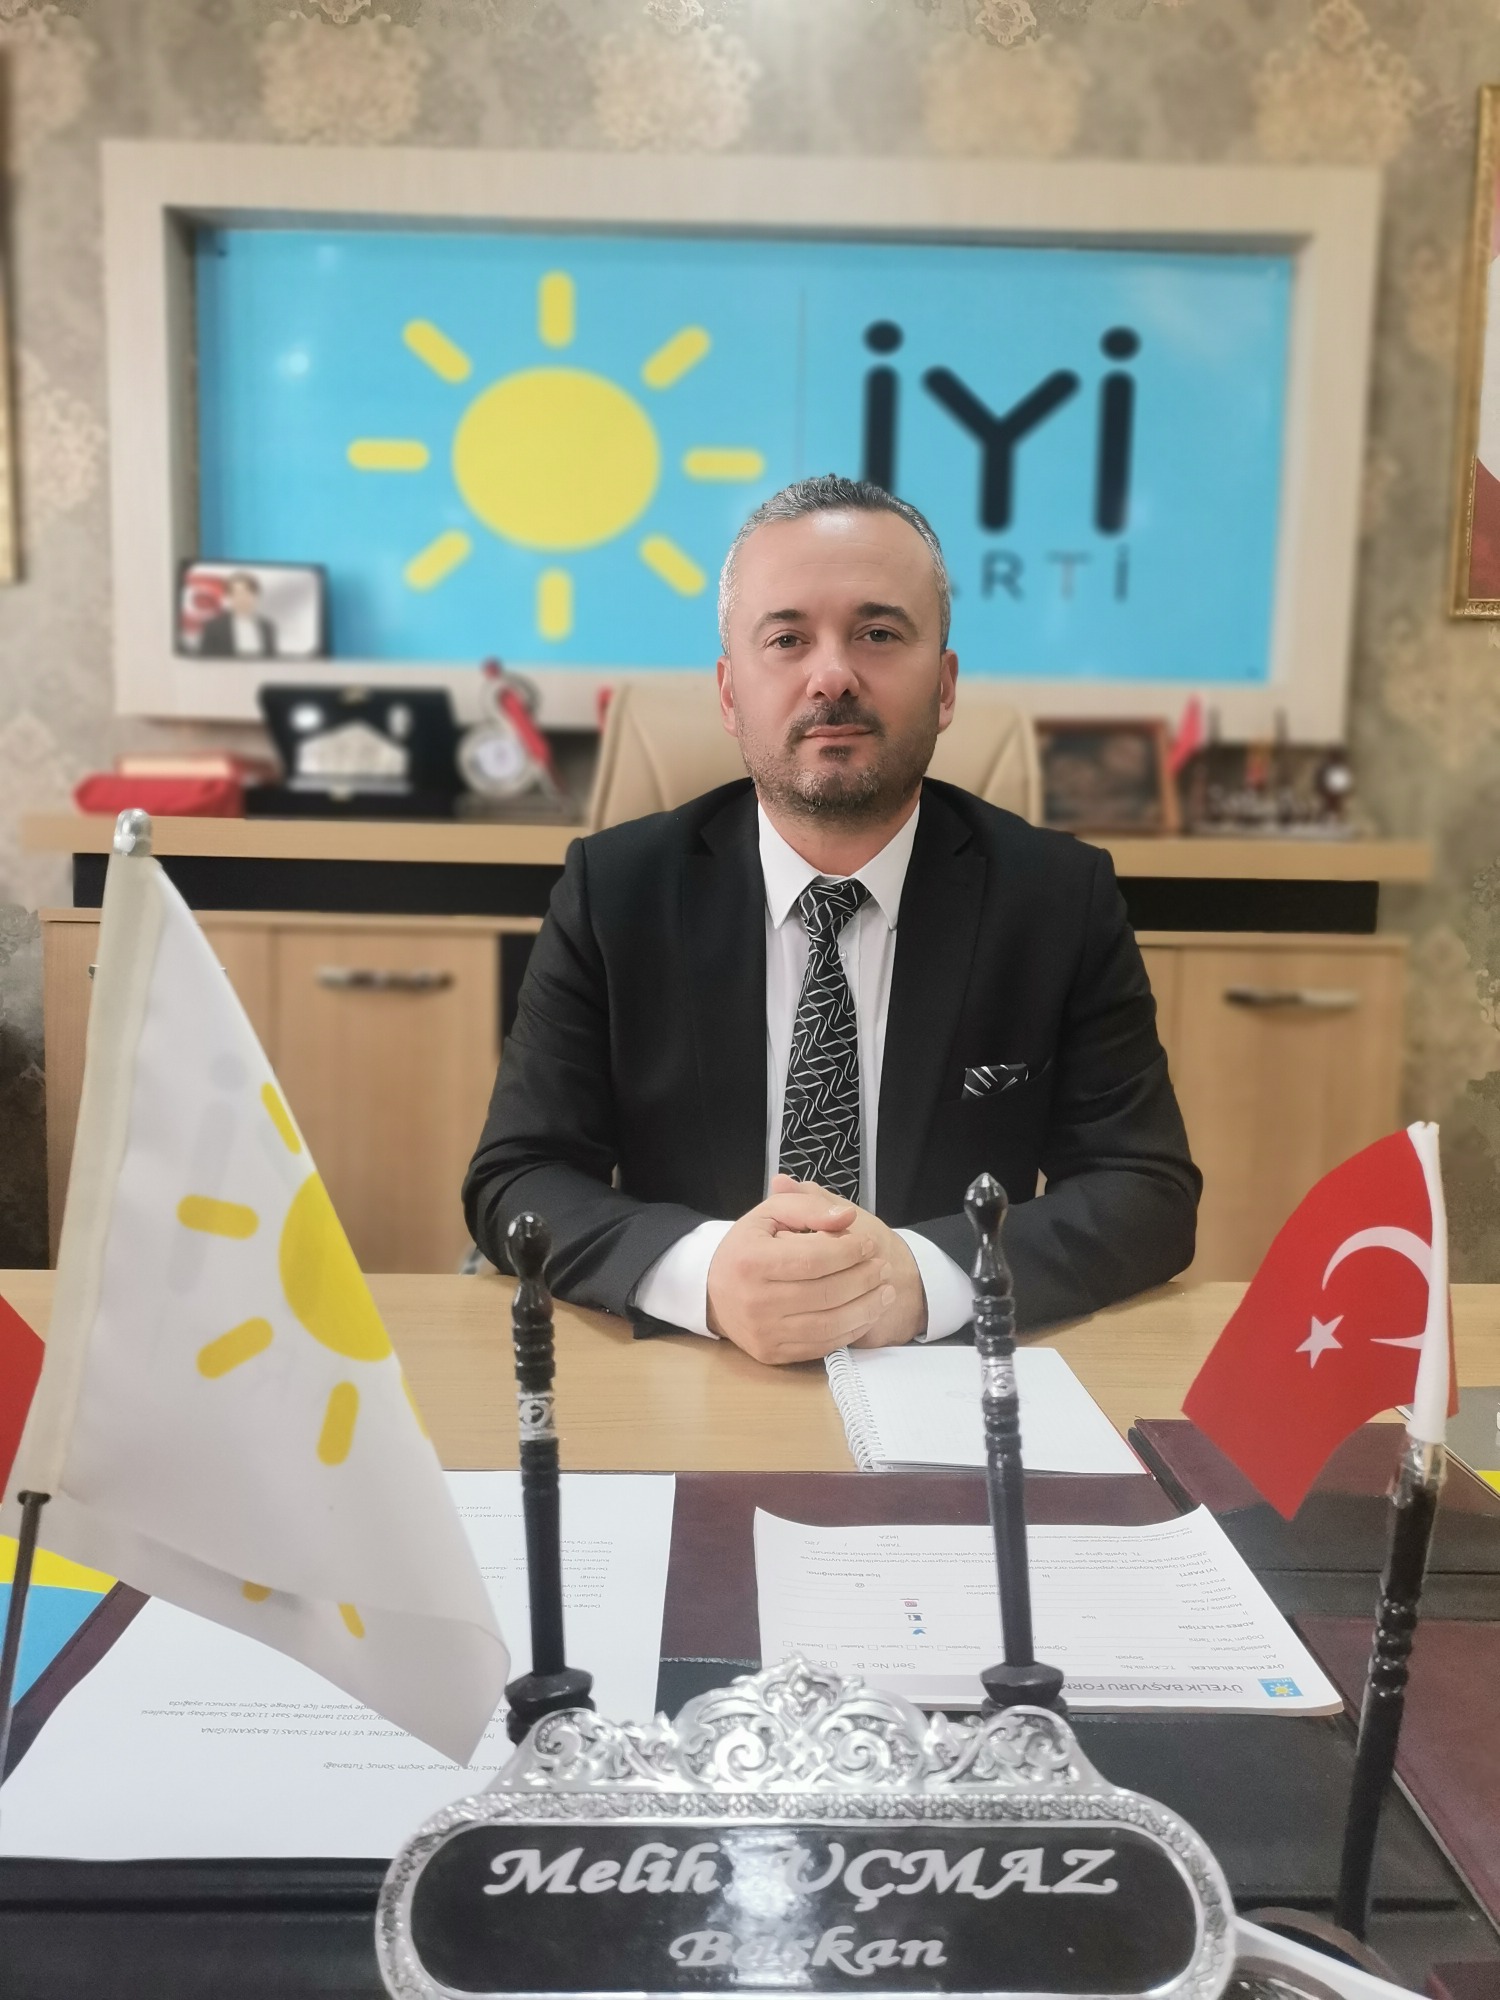 İYİ Parti Sivas Merkez İlçe Başkanı Melih Uçmaz Öğretmenler Gününü Kutladı